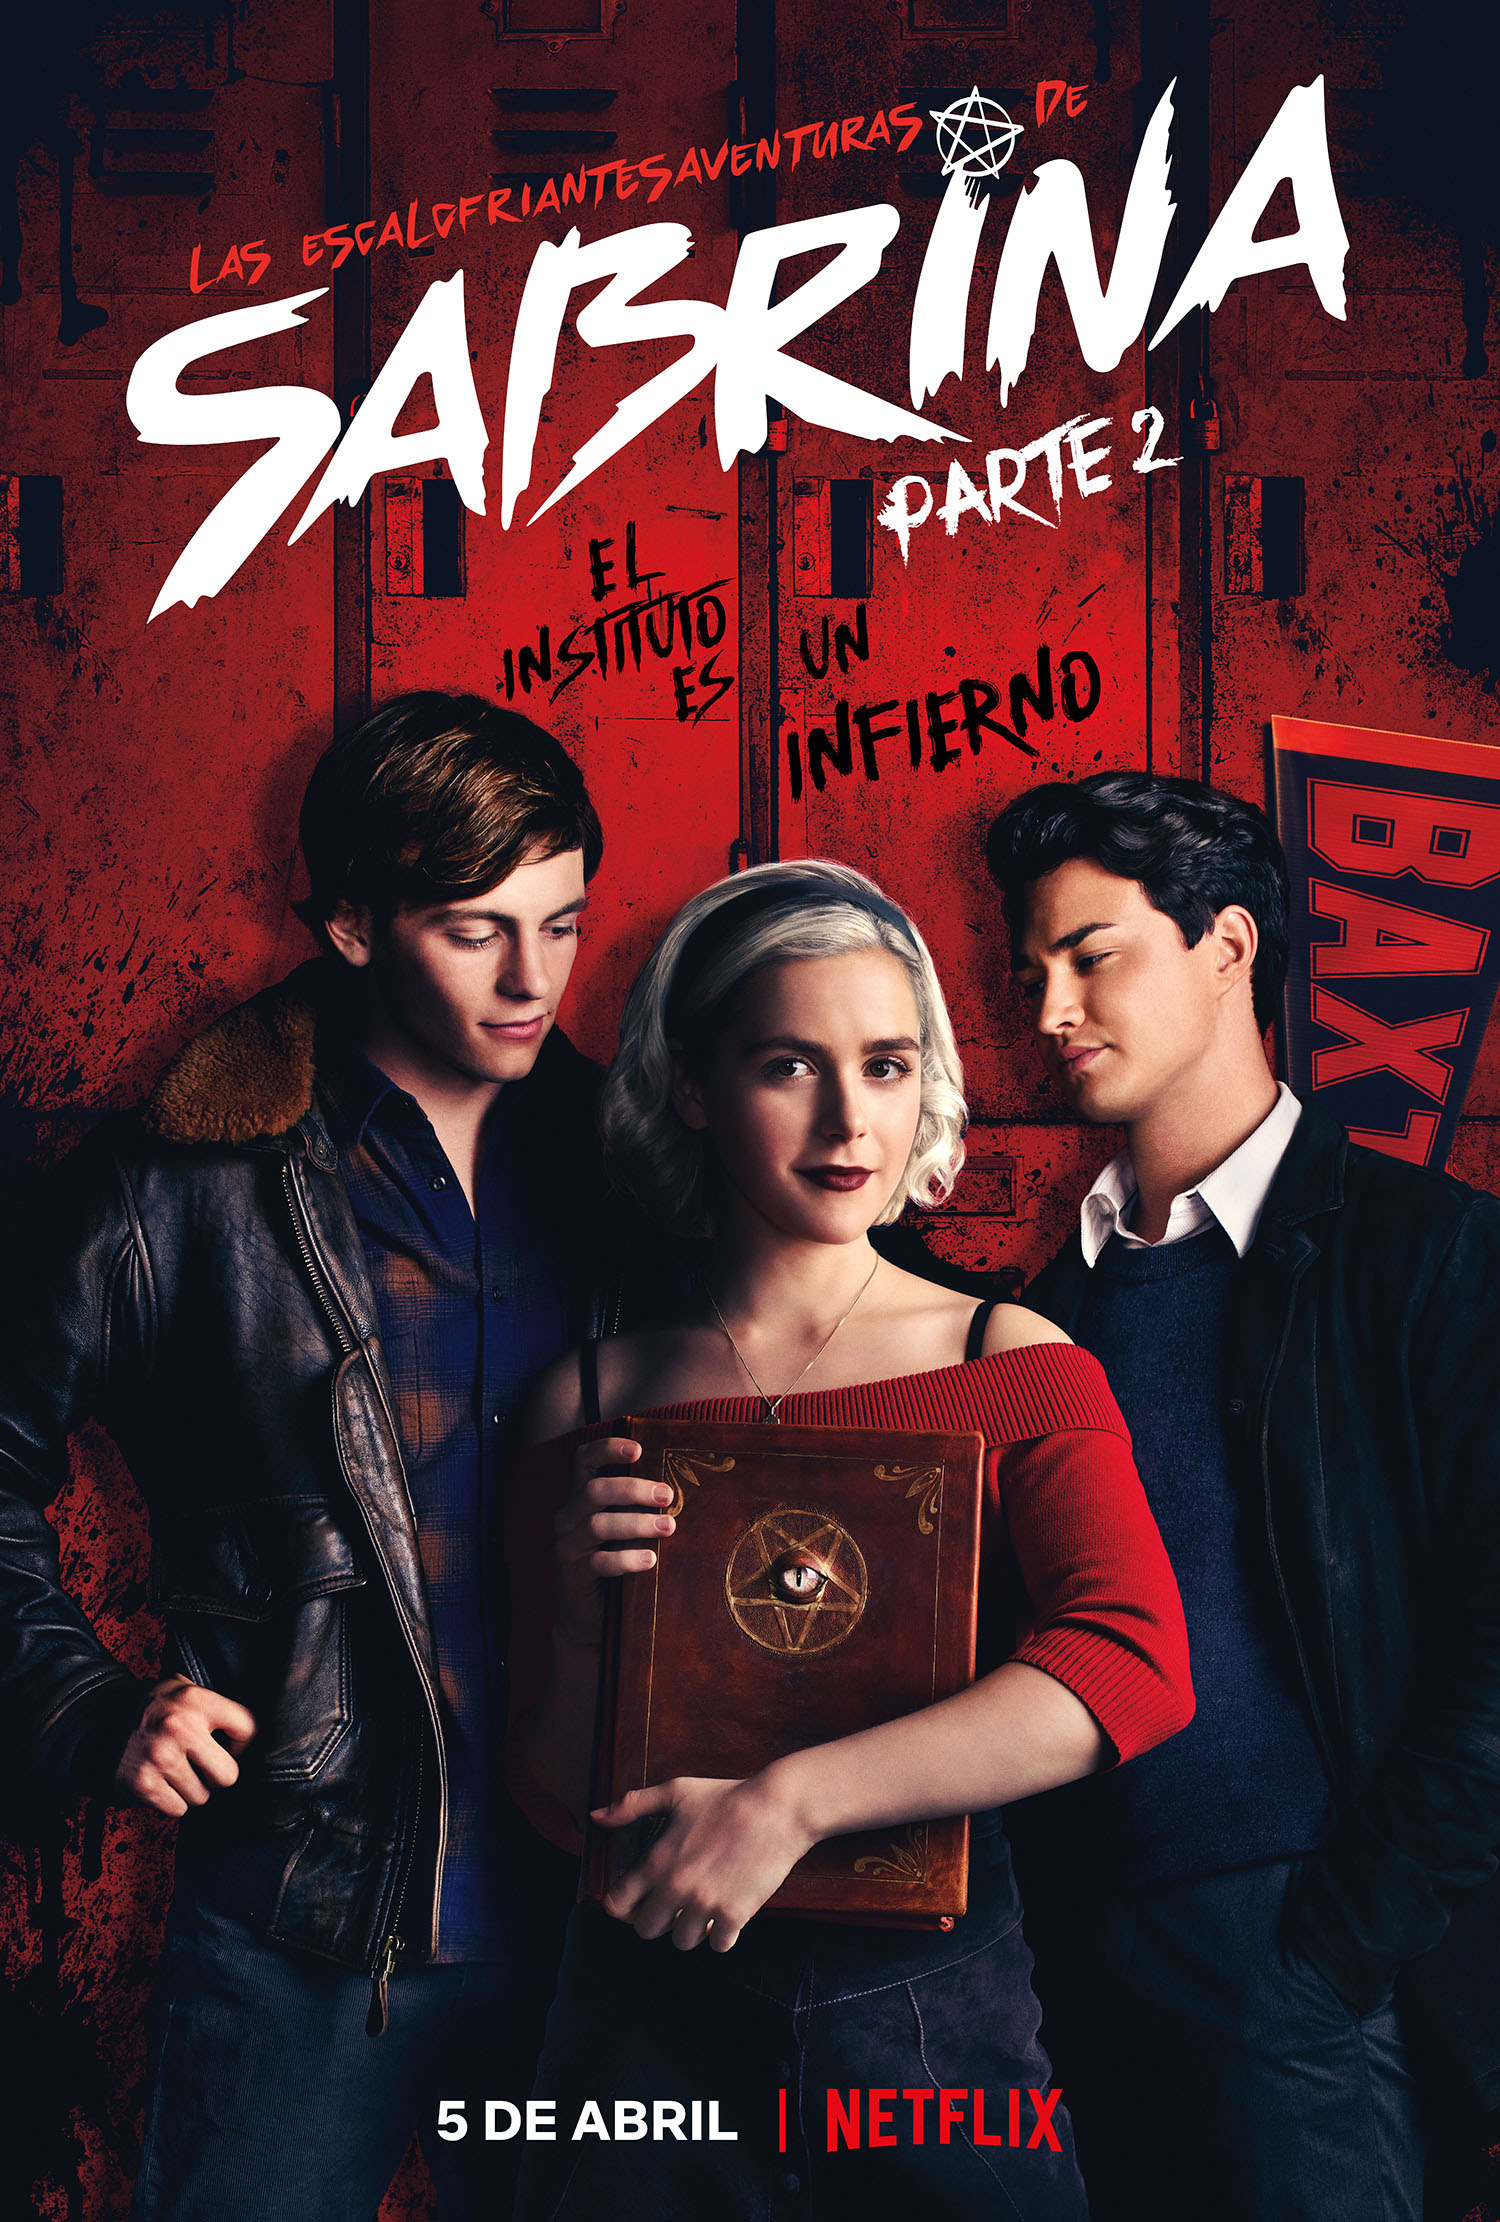 Primeras impresiones de ‘Las escalofriantes aventuras de Sabrina: Parte 2’